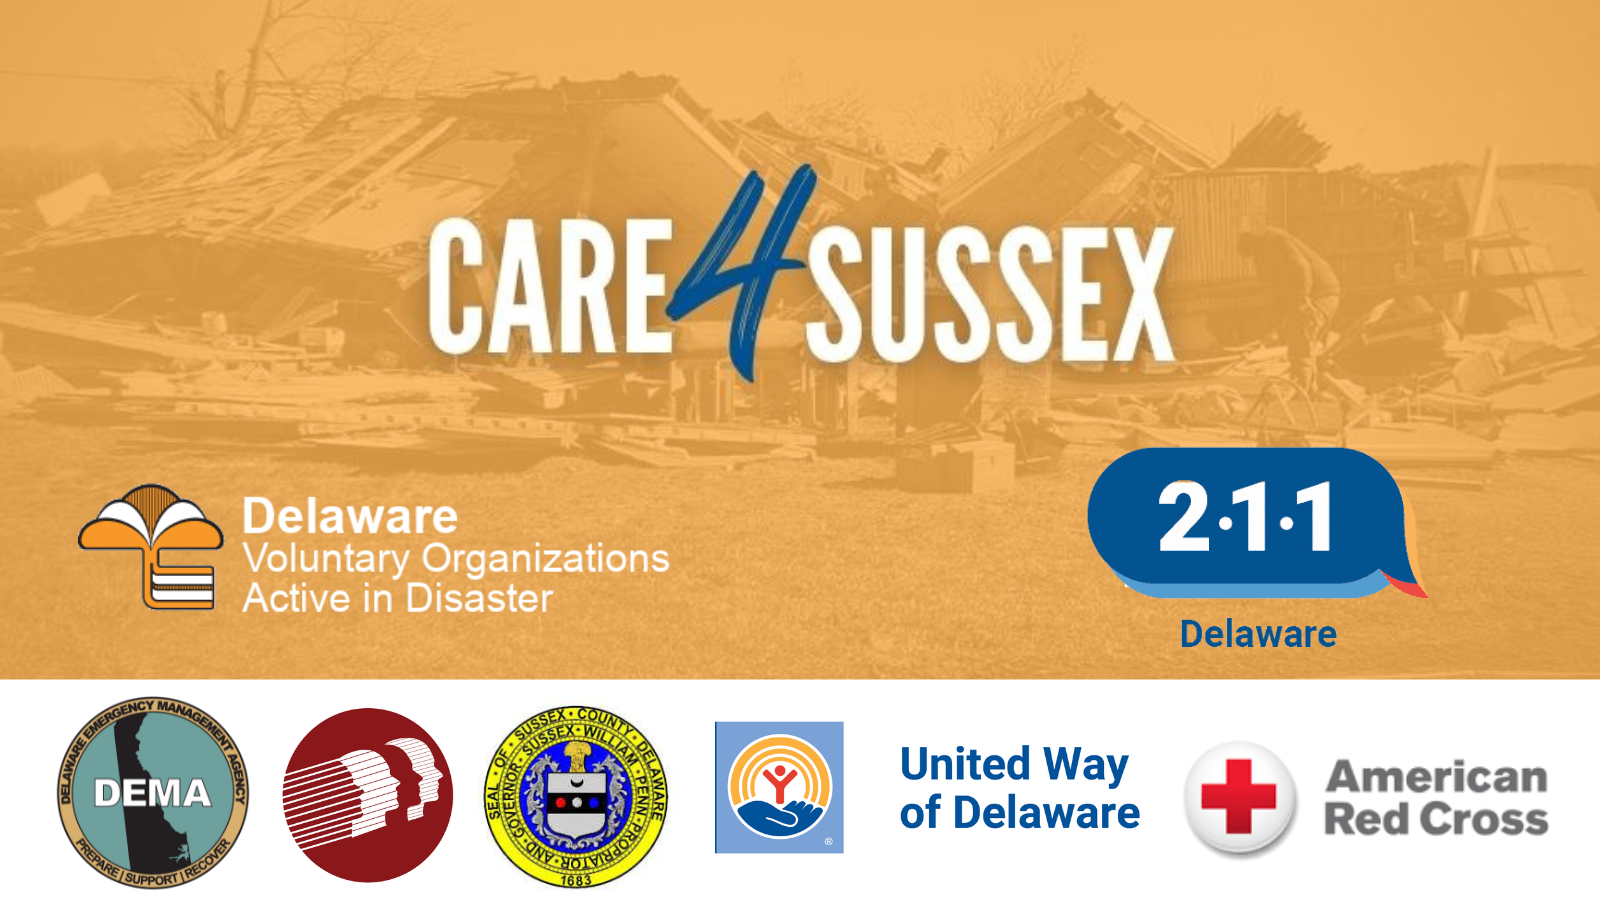 Care4Sussex Campaign